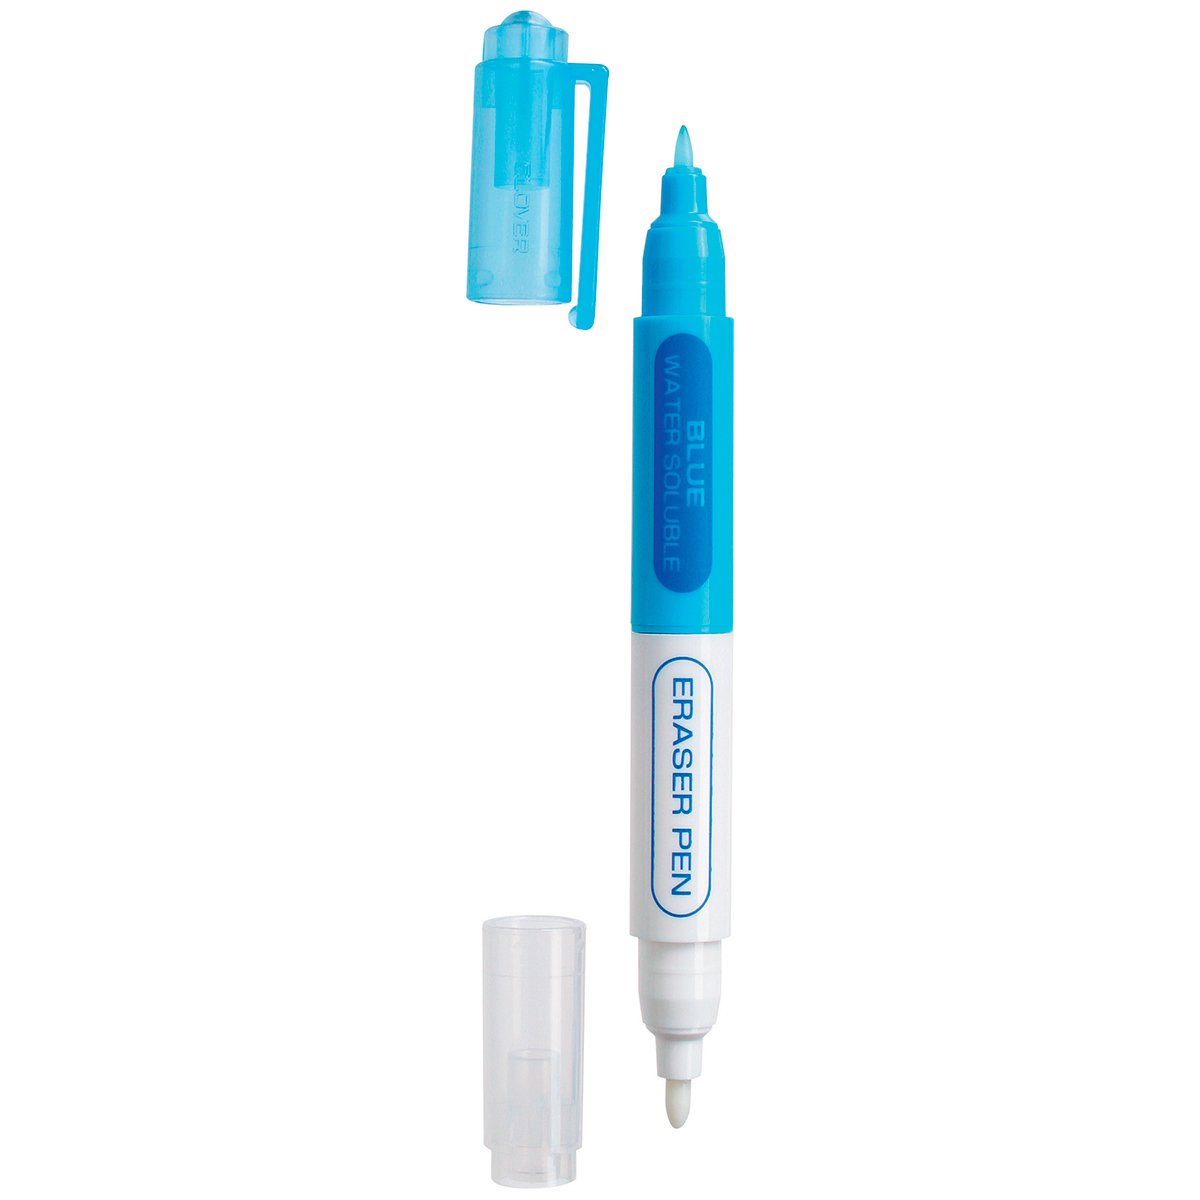 Water Soluble Pen For Veil Transfer Mesh - 3073640917936